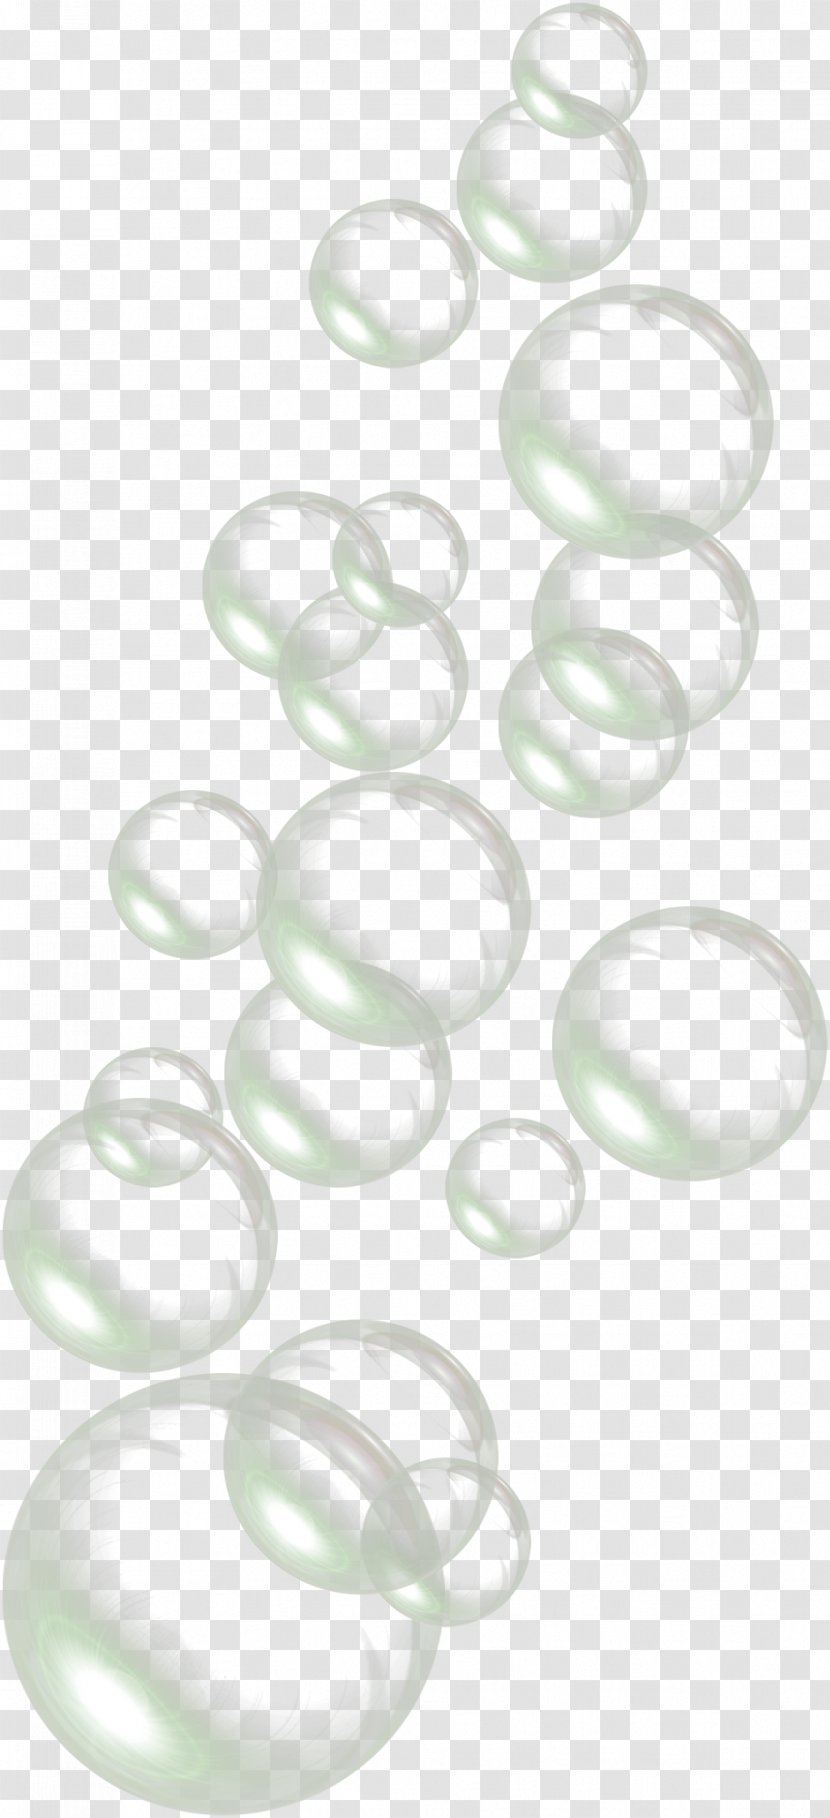 Clip Art - Texture - Drops Of Water Bubbles Transparent PNG